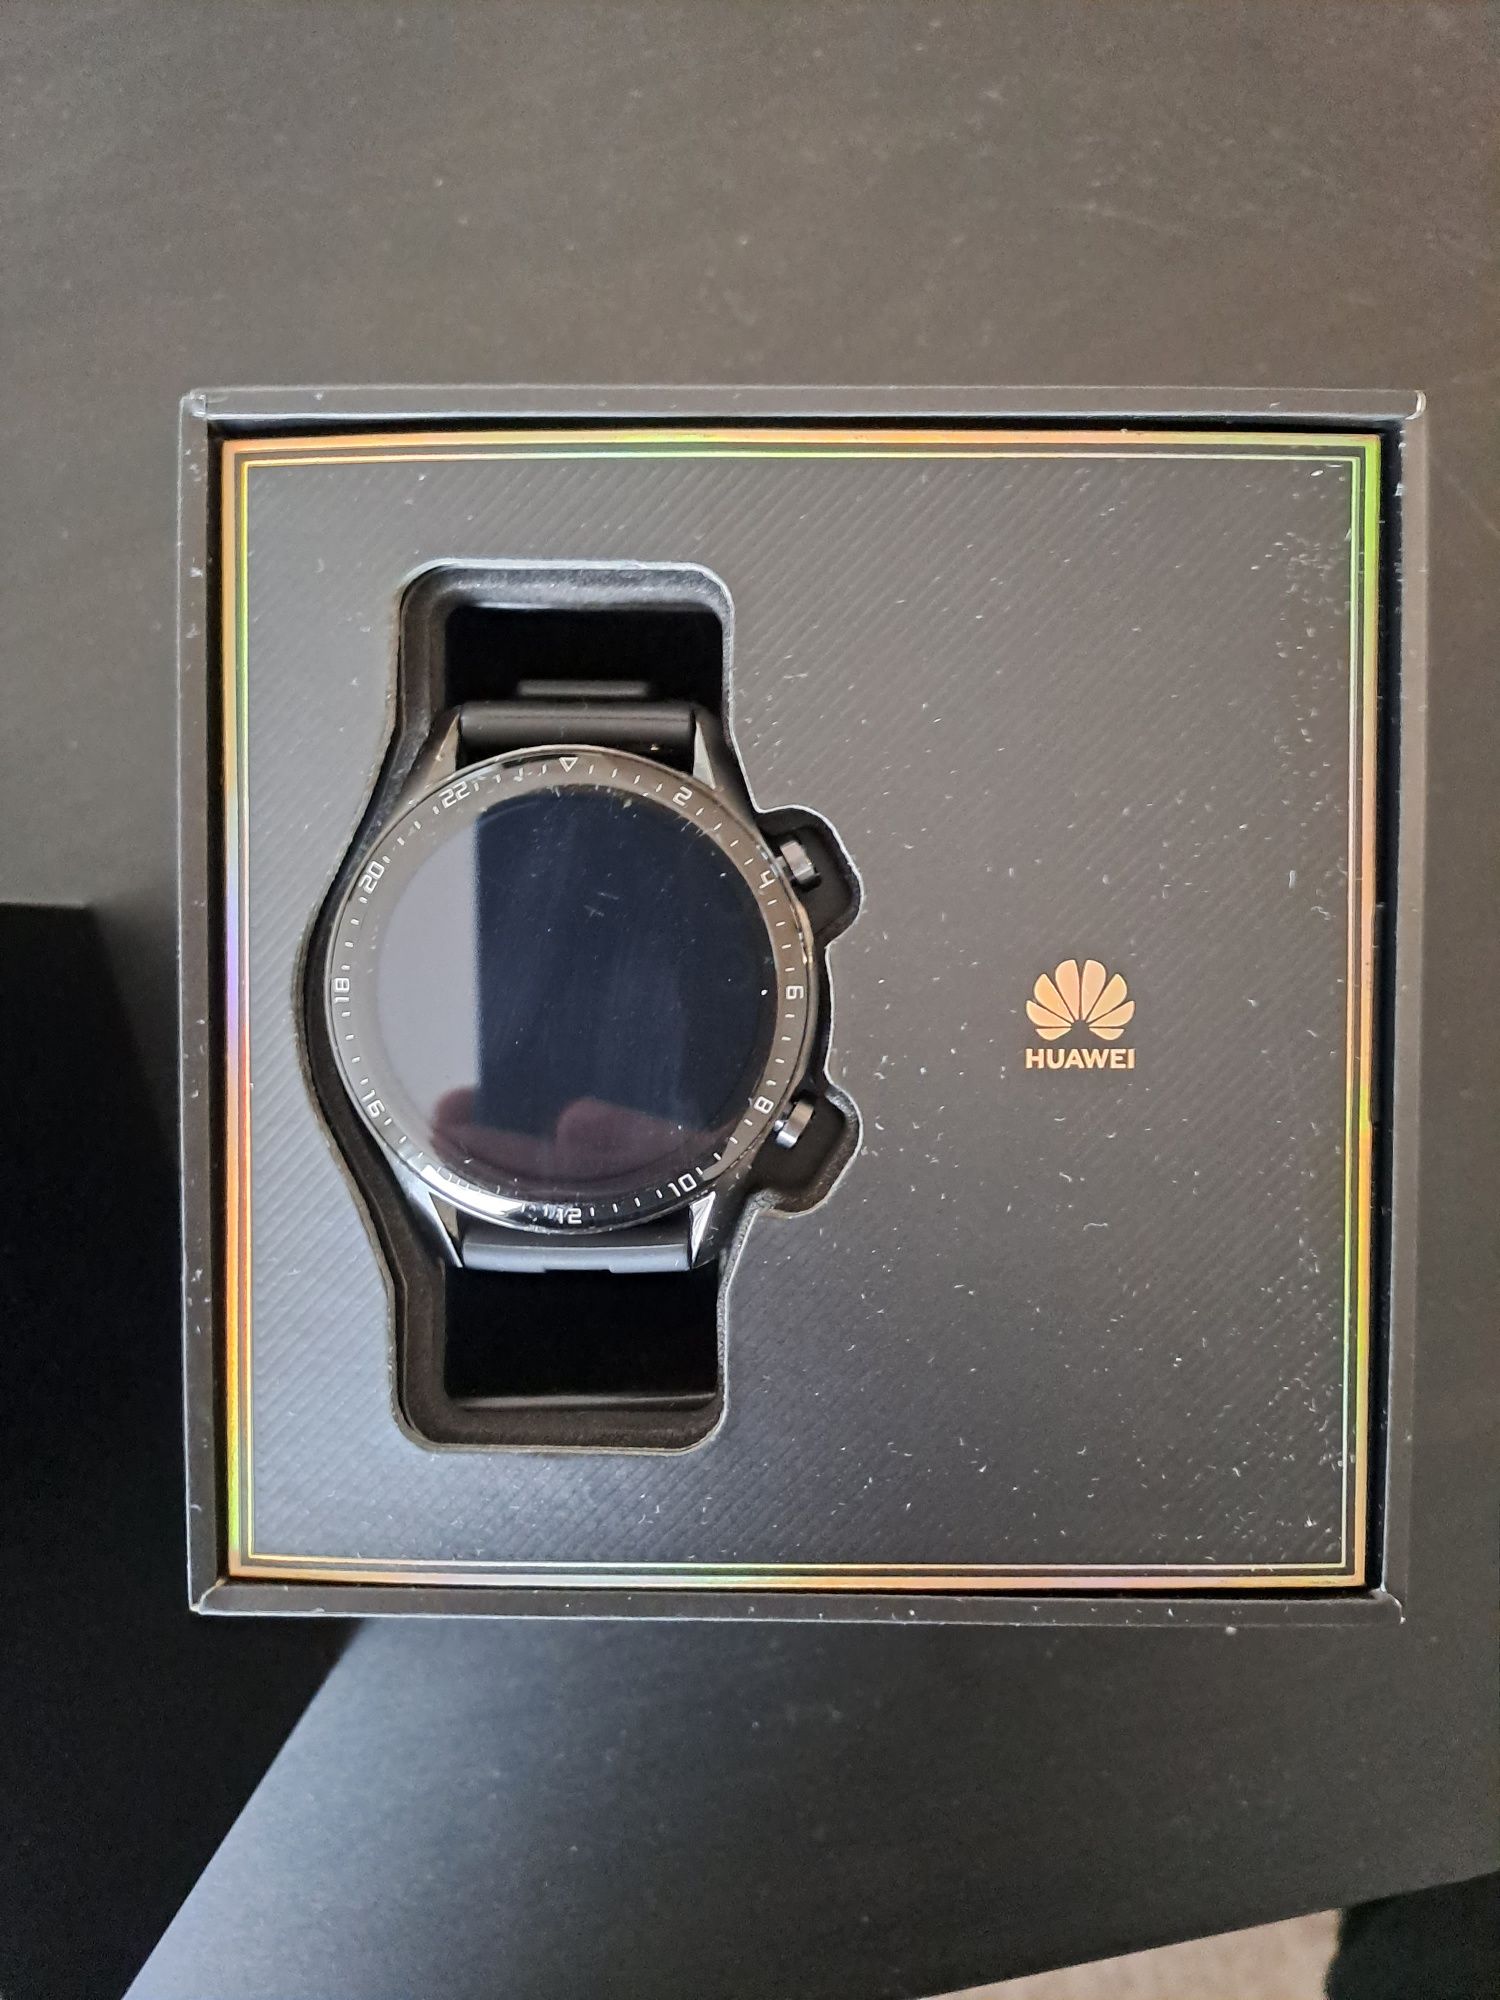 Smartwatch Huawei gt2